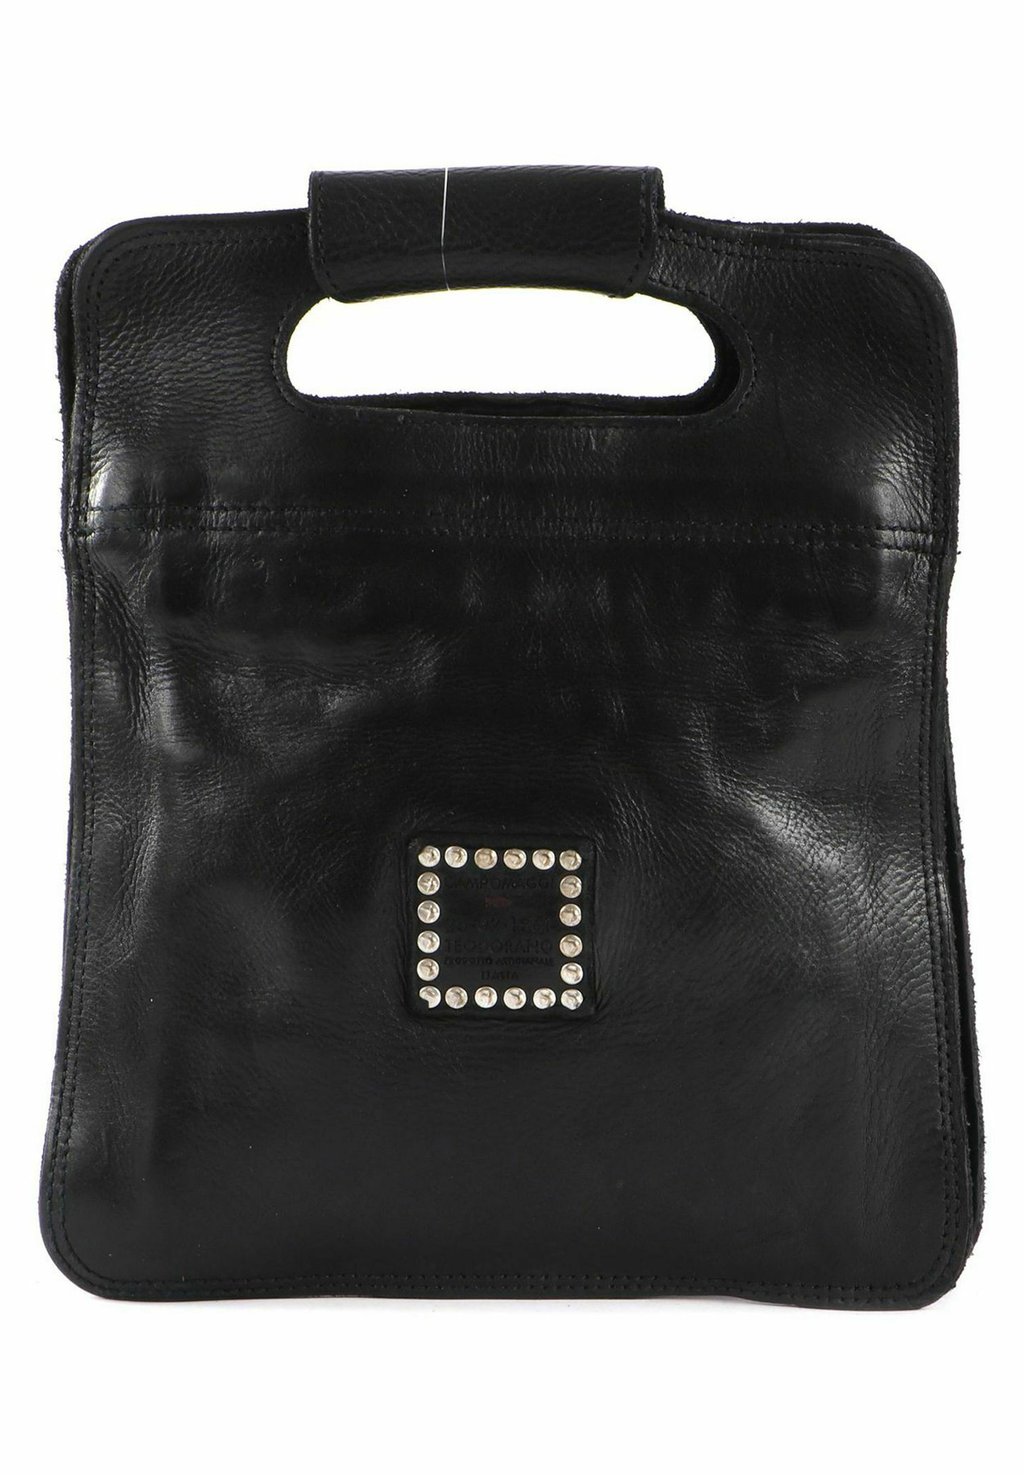 Сумка через плечо VERTICAL Campomaggi, цвет nero сумка через плечо cromia 1405174 crm nero